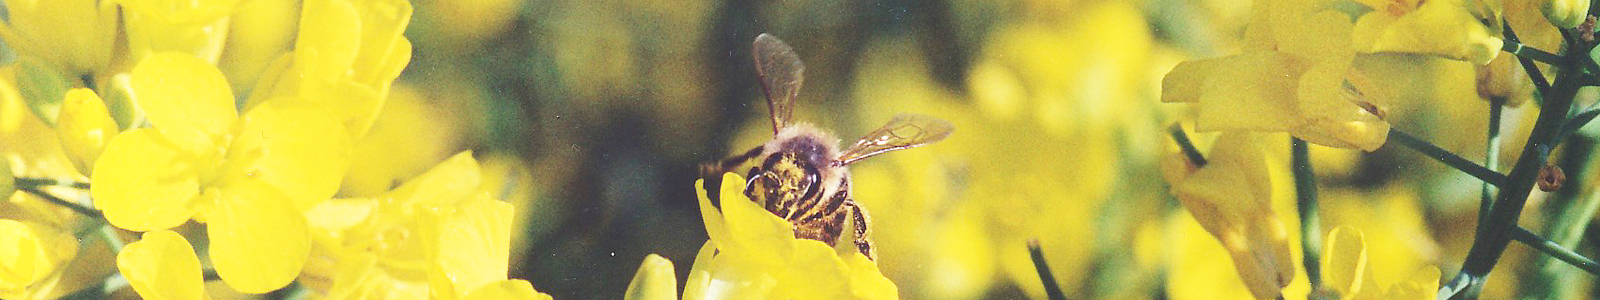 Biene auf gelber Blüte ©Feuerbach